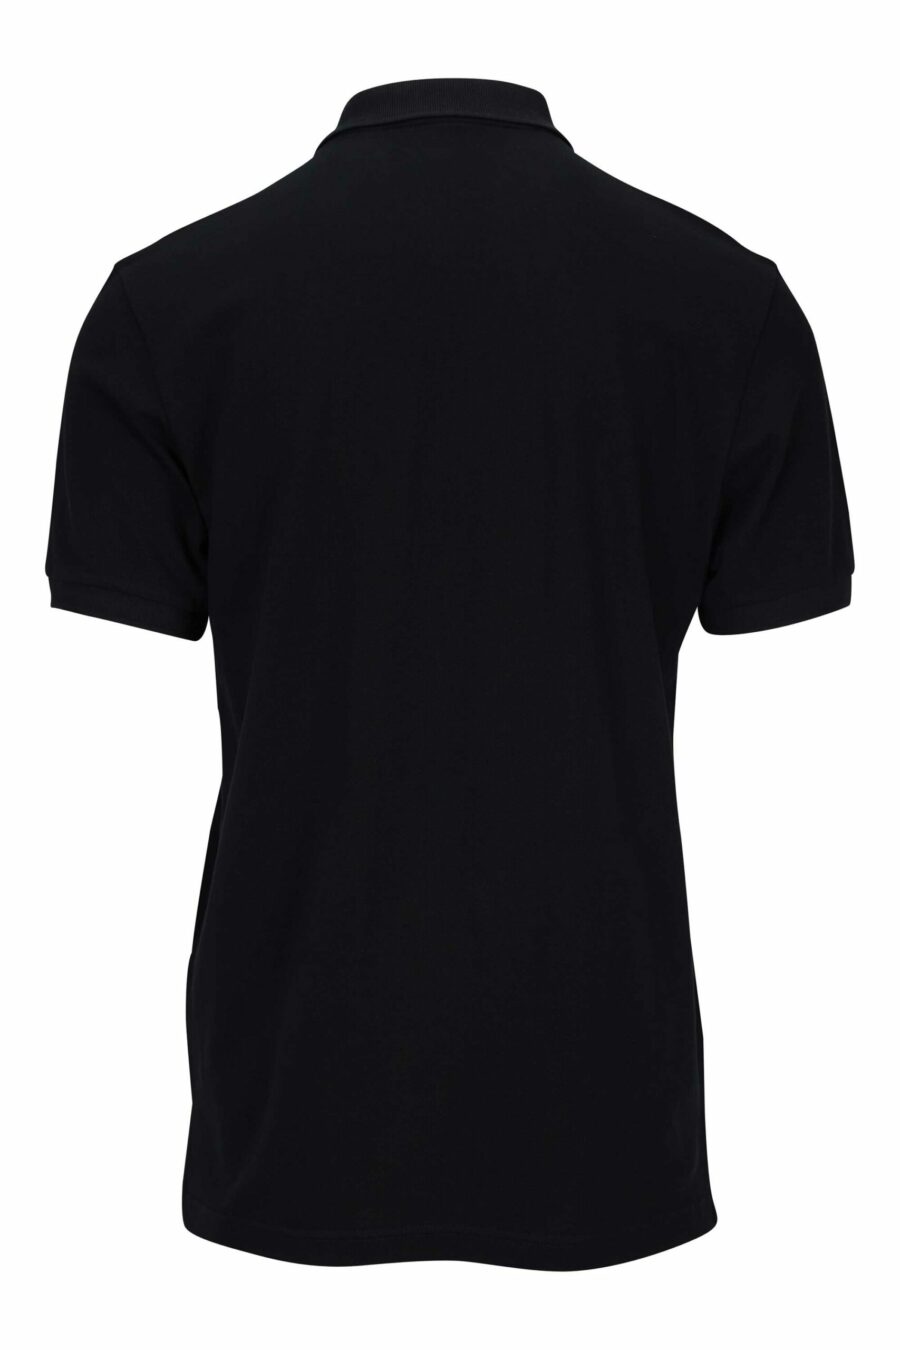 Schwarzes Poloshirt mit gesticktem "Teddy"-Logo - 667113458069 1 skaliert